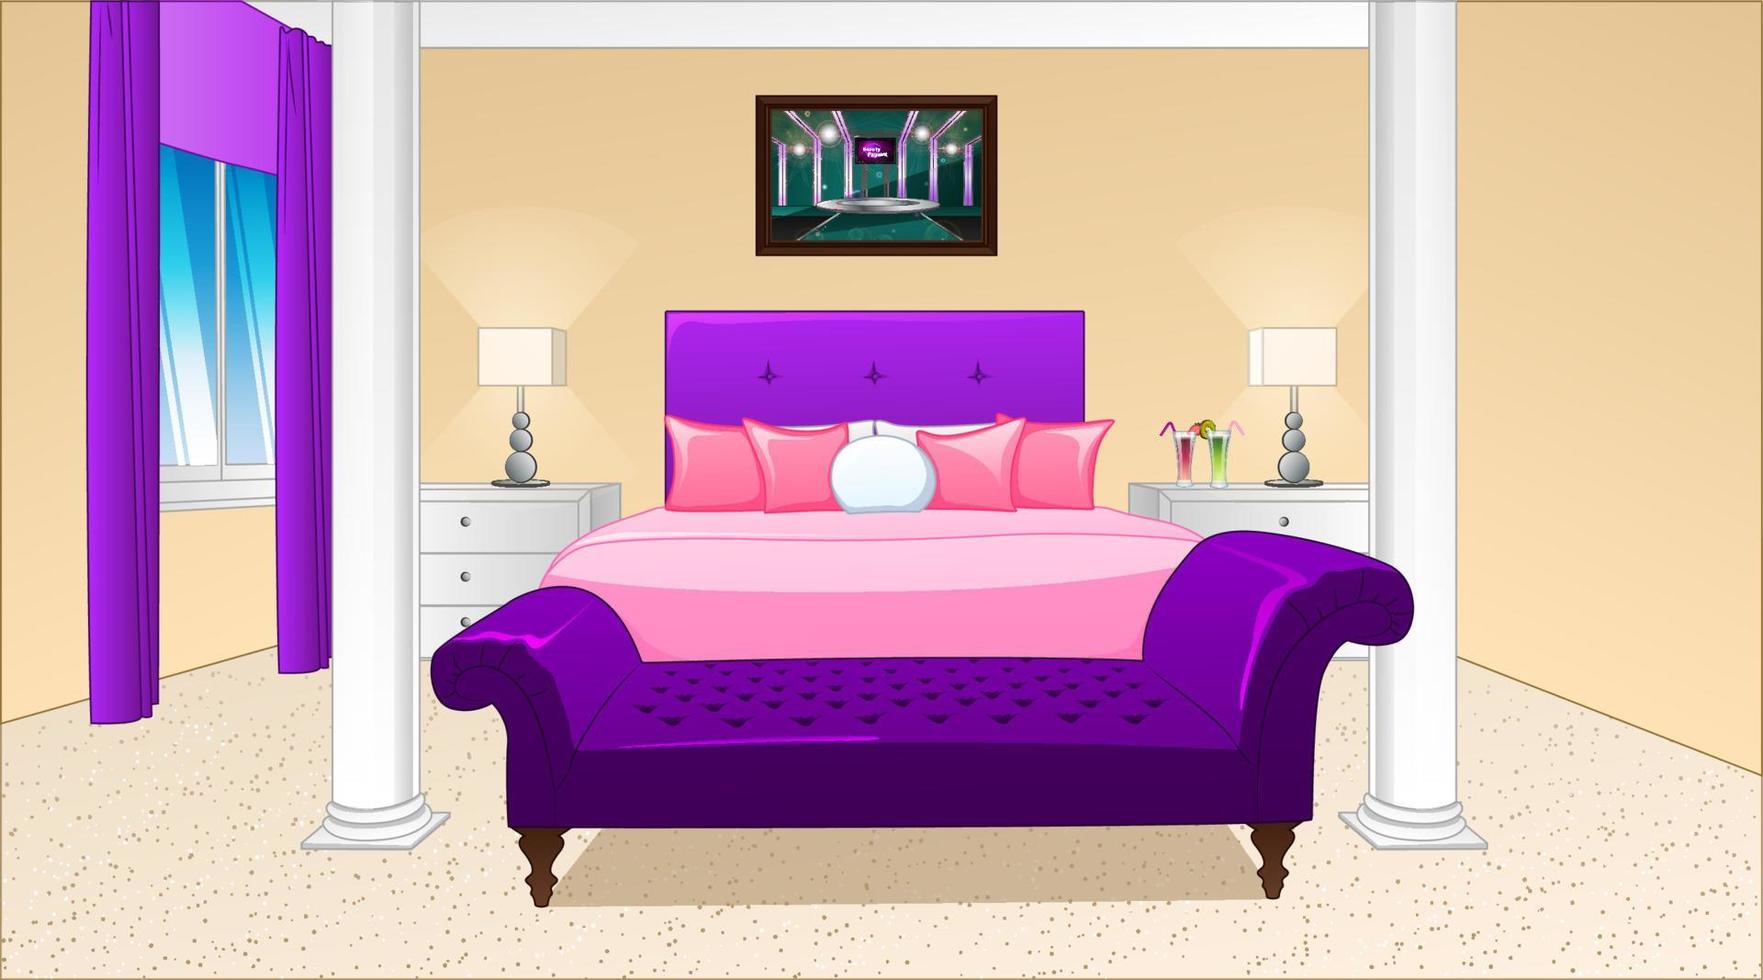 pigiama festa tema Camera da letto sfondo scena nel cartone animato stile. vettore illustrazione